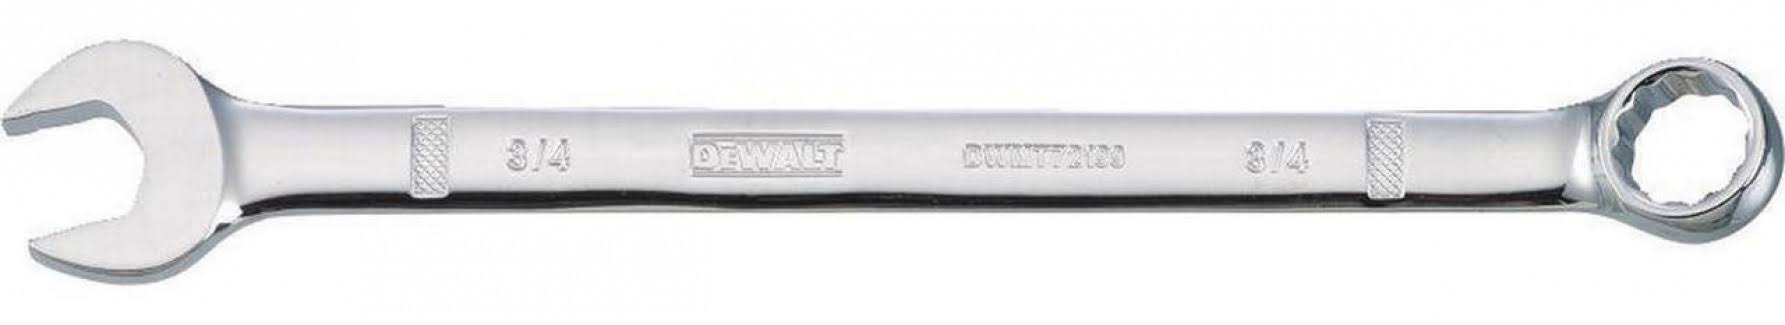 Dewalt Dwmt72199osp Combination Wrench - 3/4"